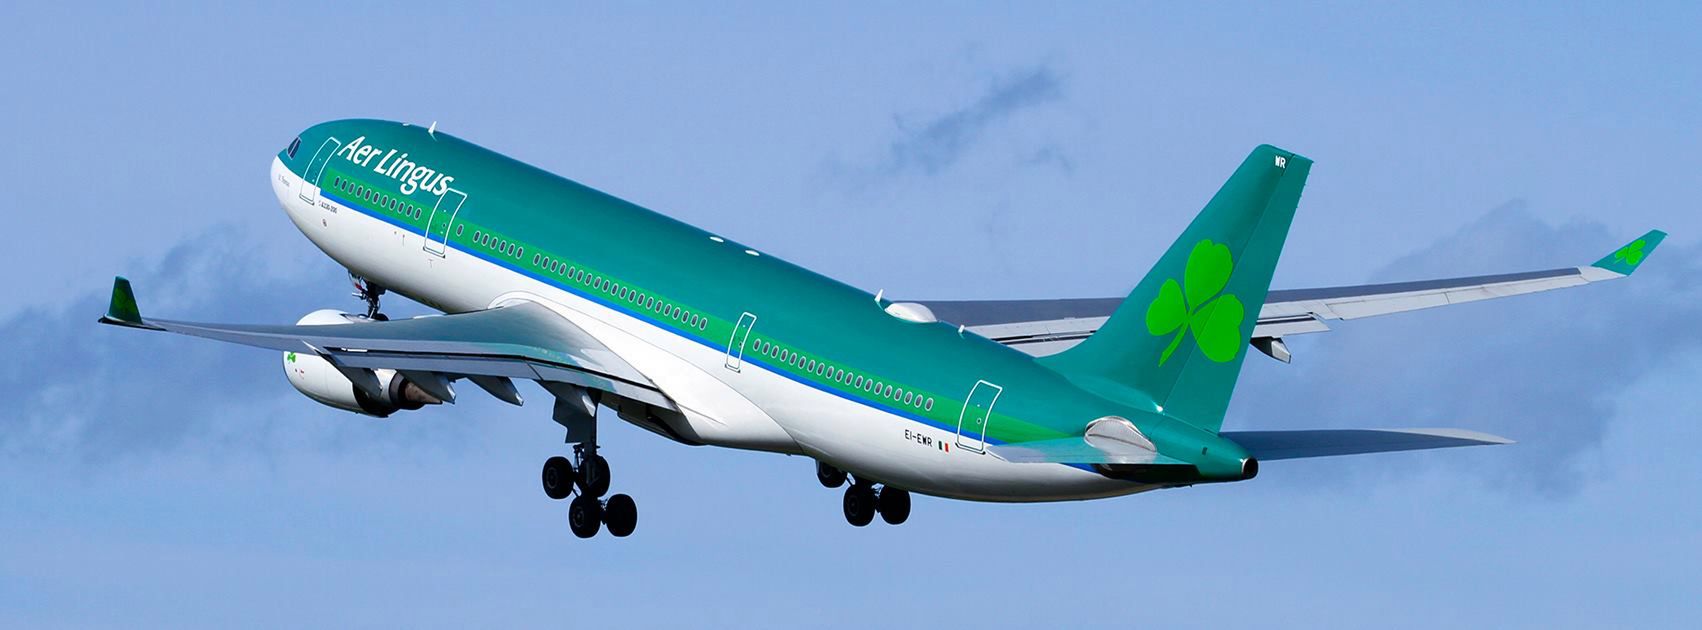 Irlandzkie linie lotnicze Aer Lingus zawieszają połączenia z Warszawą